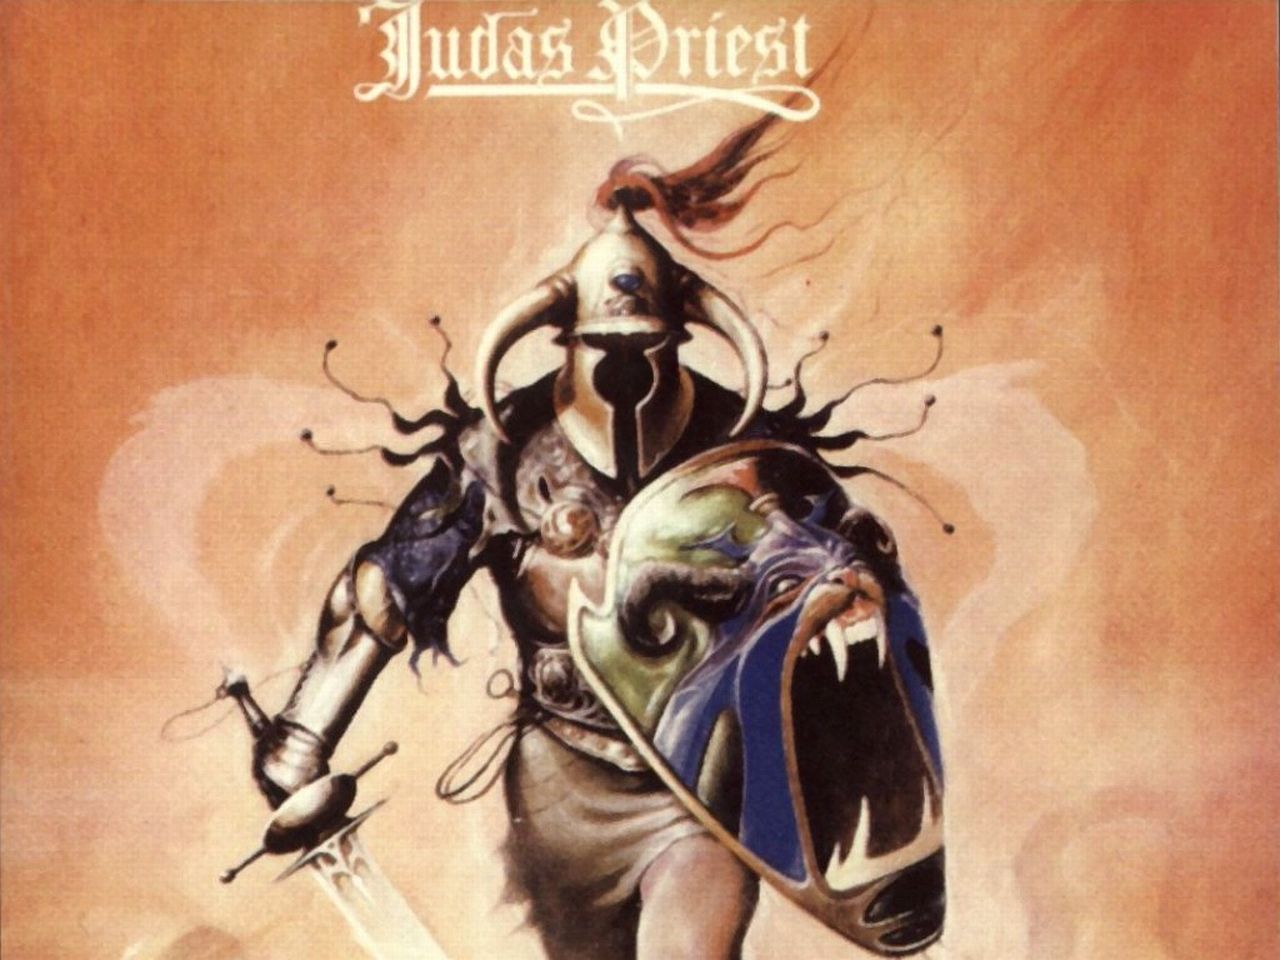 Judas Priest Computer Wallpapers, Desktop Backgrounds | 1280x960 ...